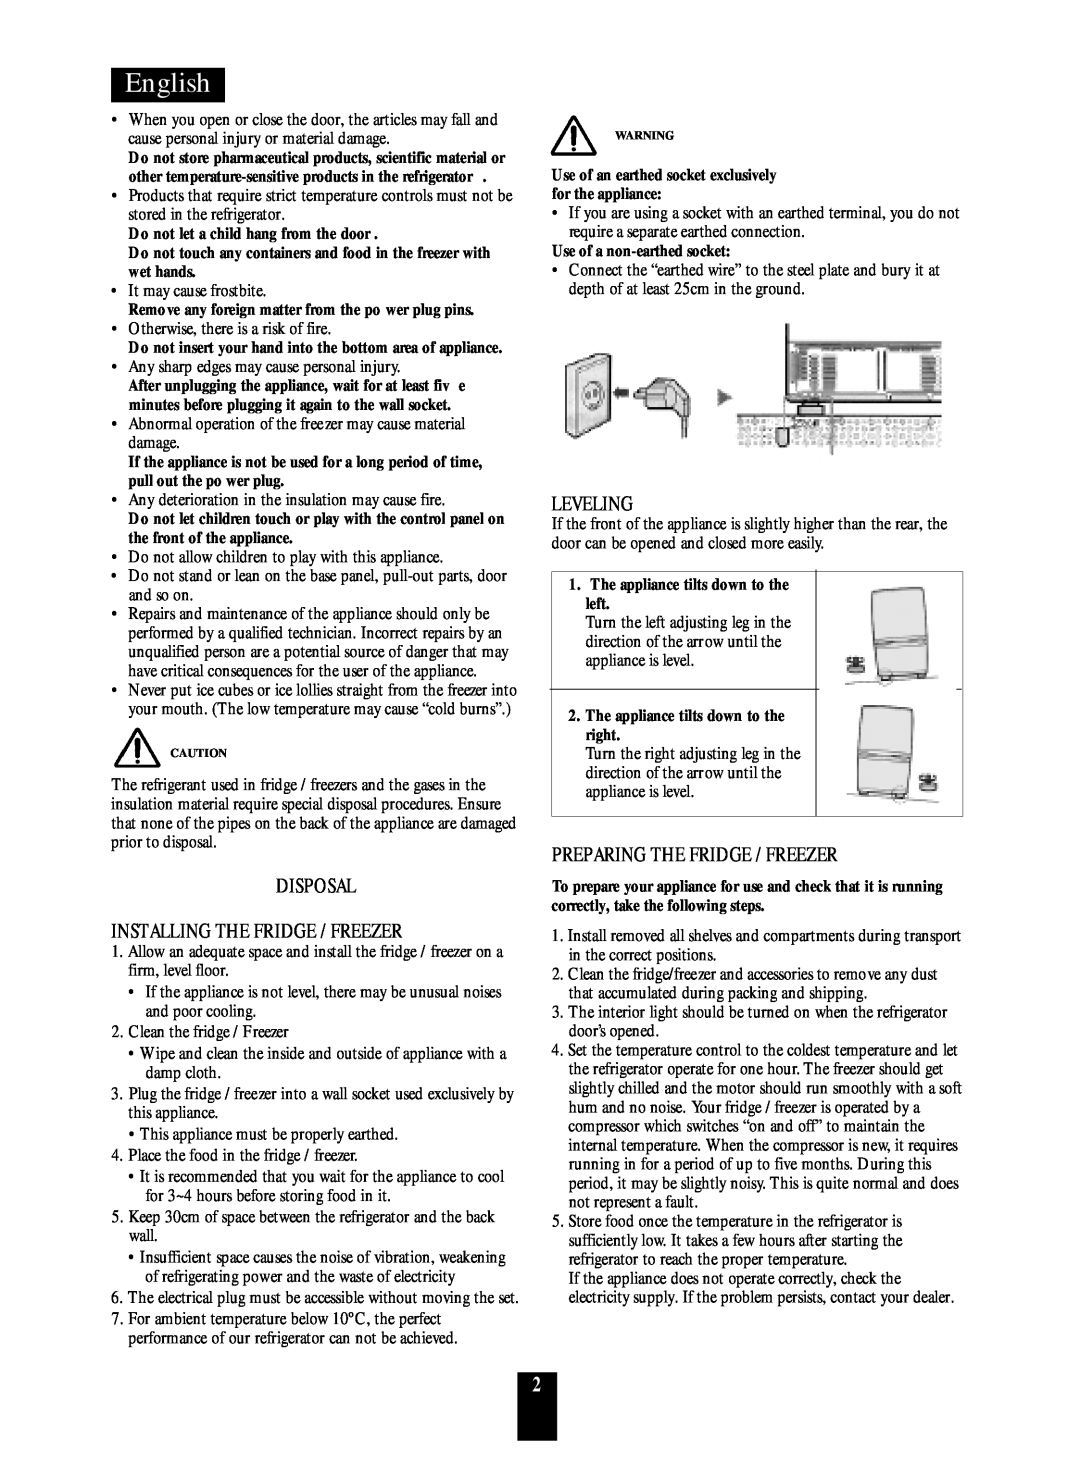 Daewoo ERF-33.M, ERF-36.M manual Disposal Installing The Fridge / Freezer, Leveling, Preparing The Fridge / Freezer, English 